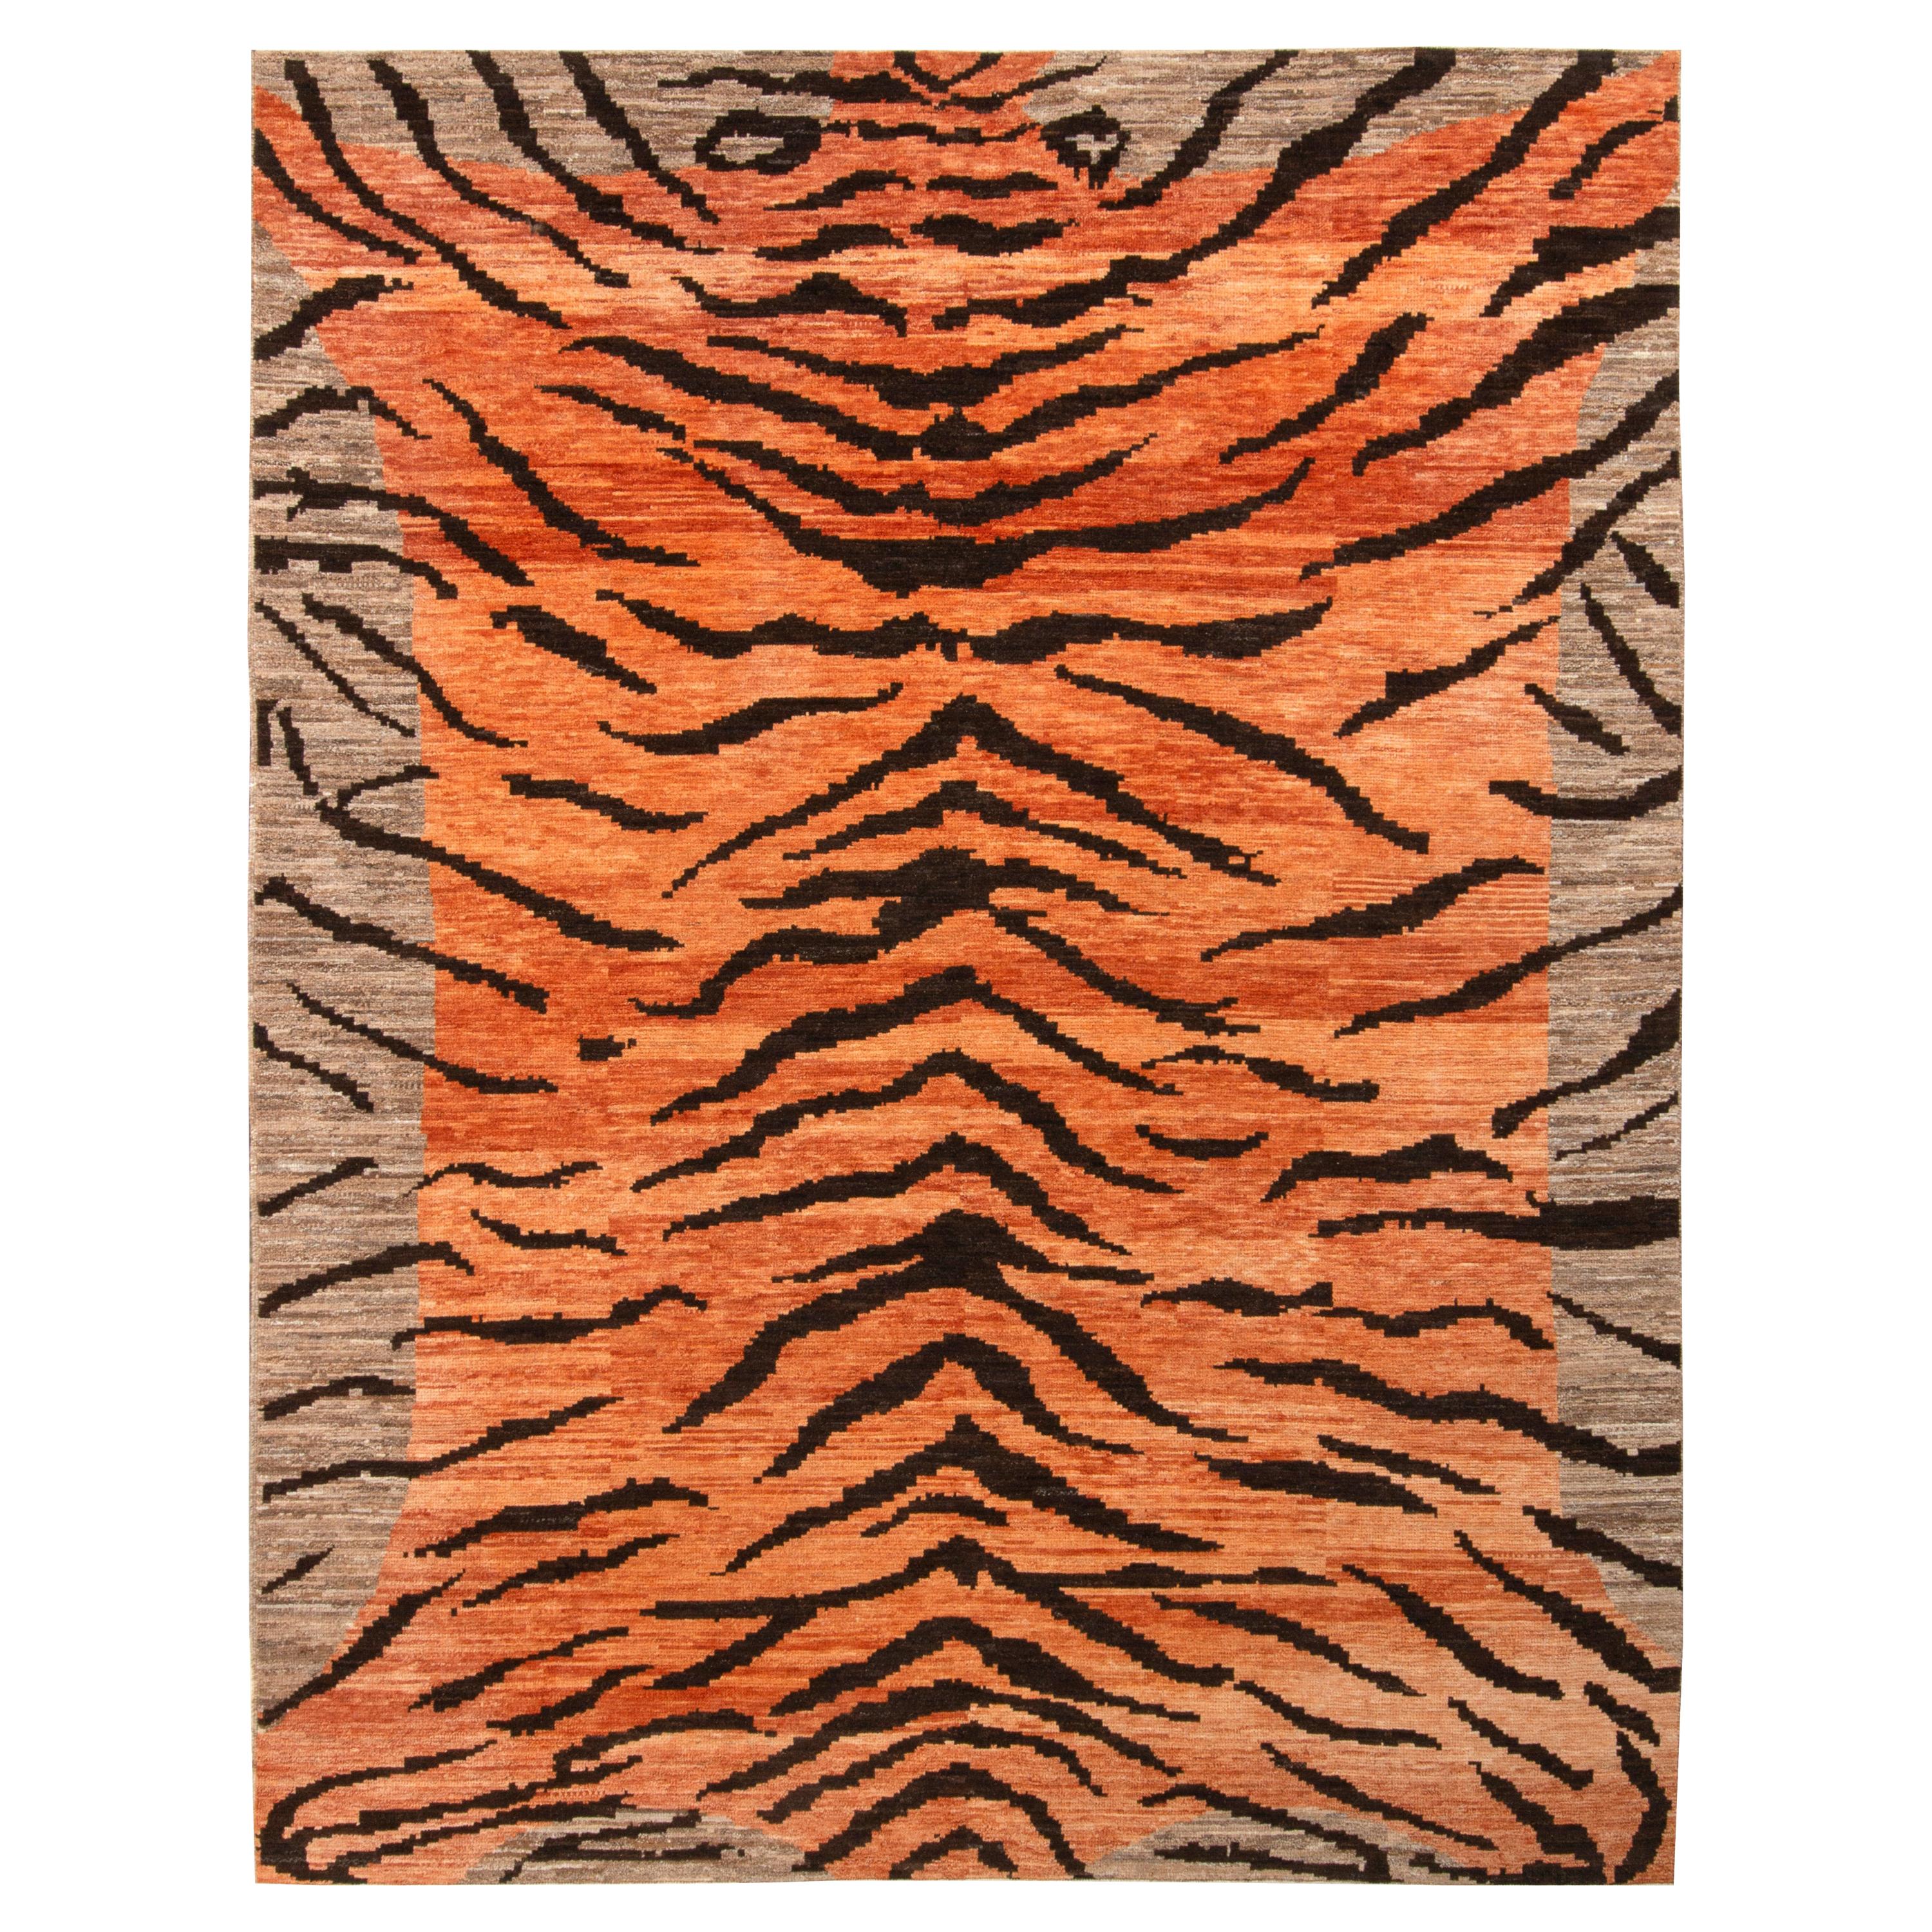 Rug & Kilim’s Tiger Rug in Orange, Beige-Brown and Black Pelt Pattern